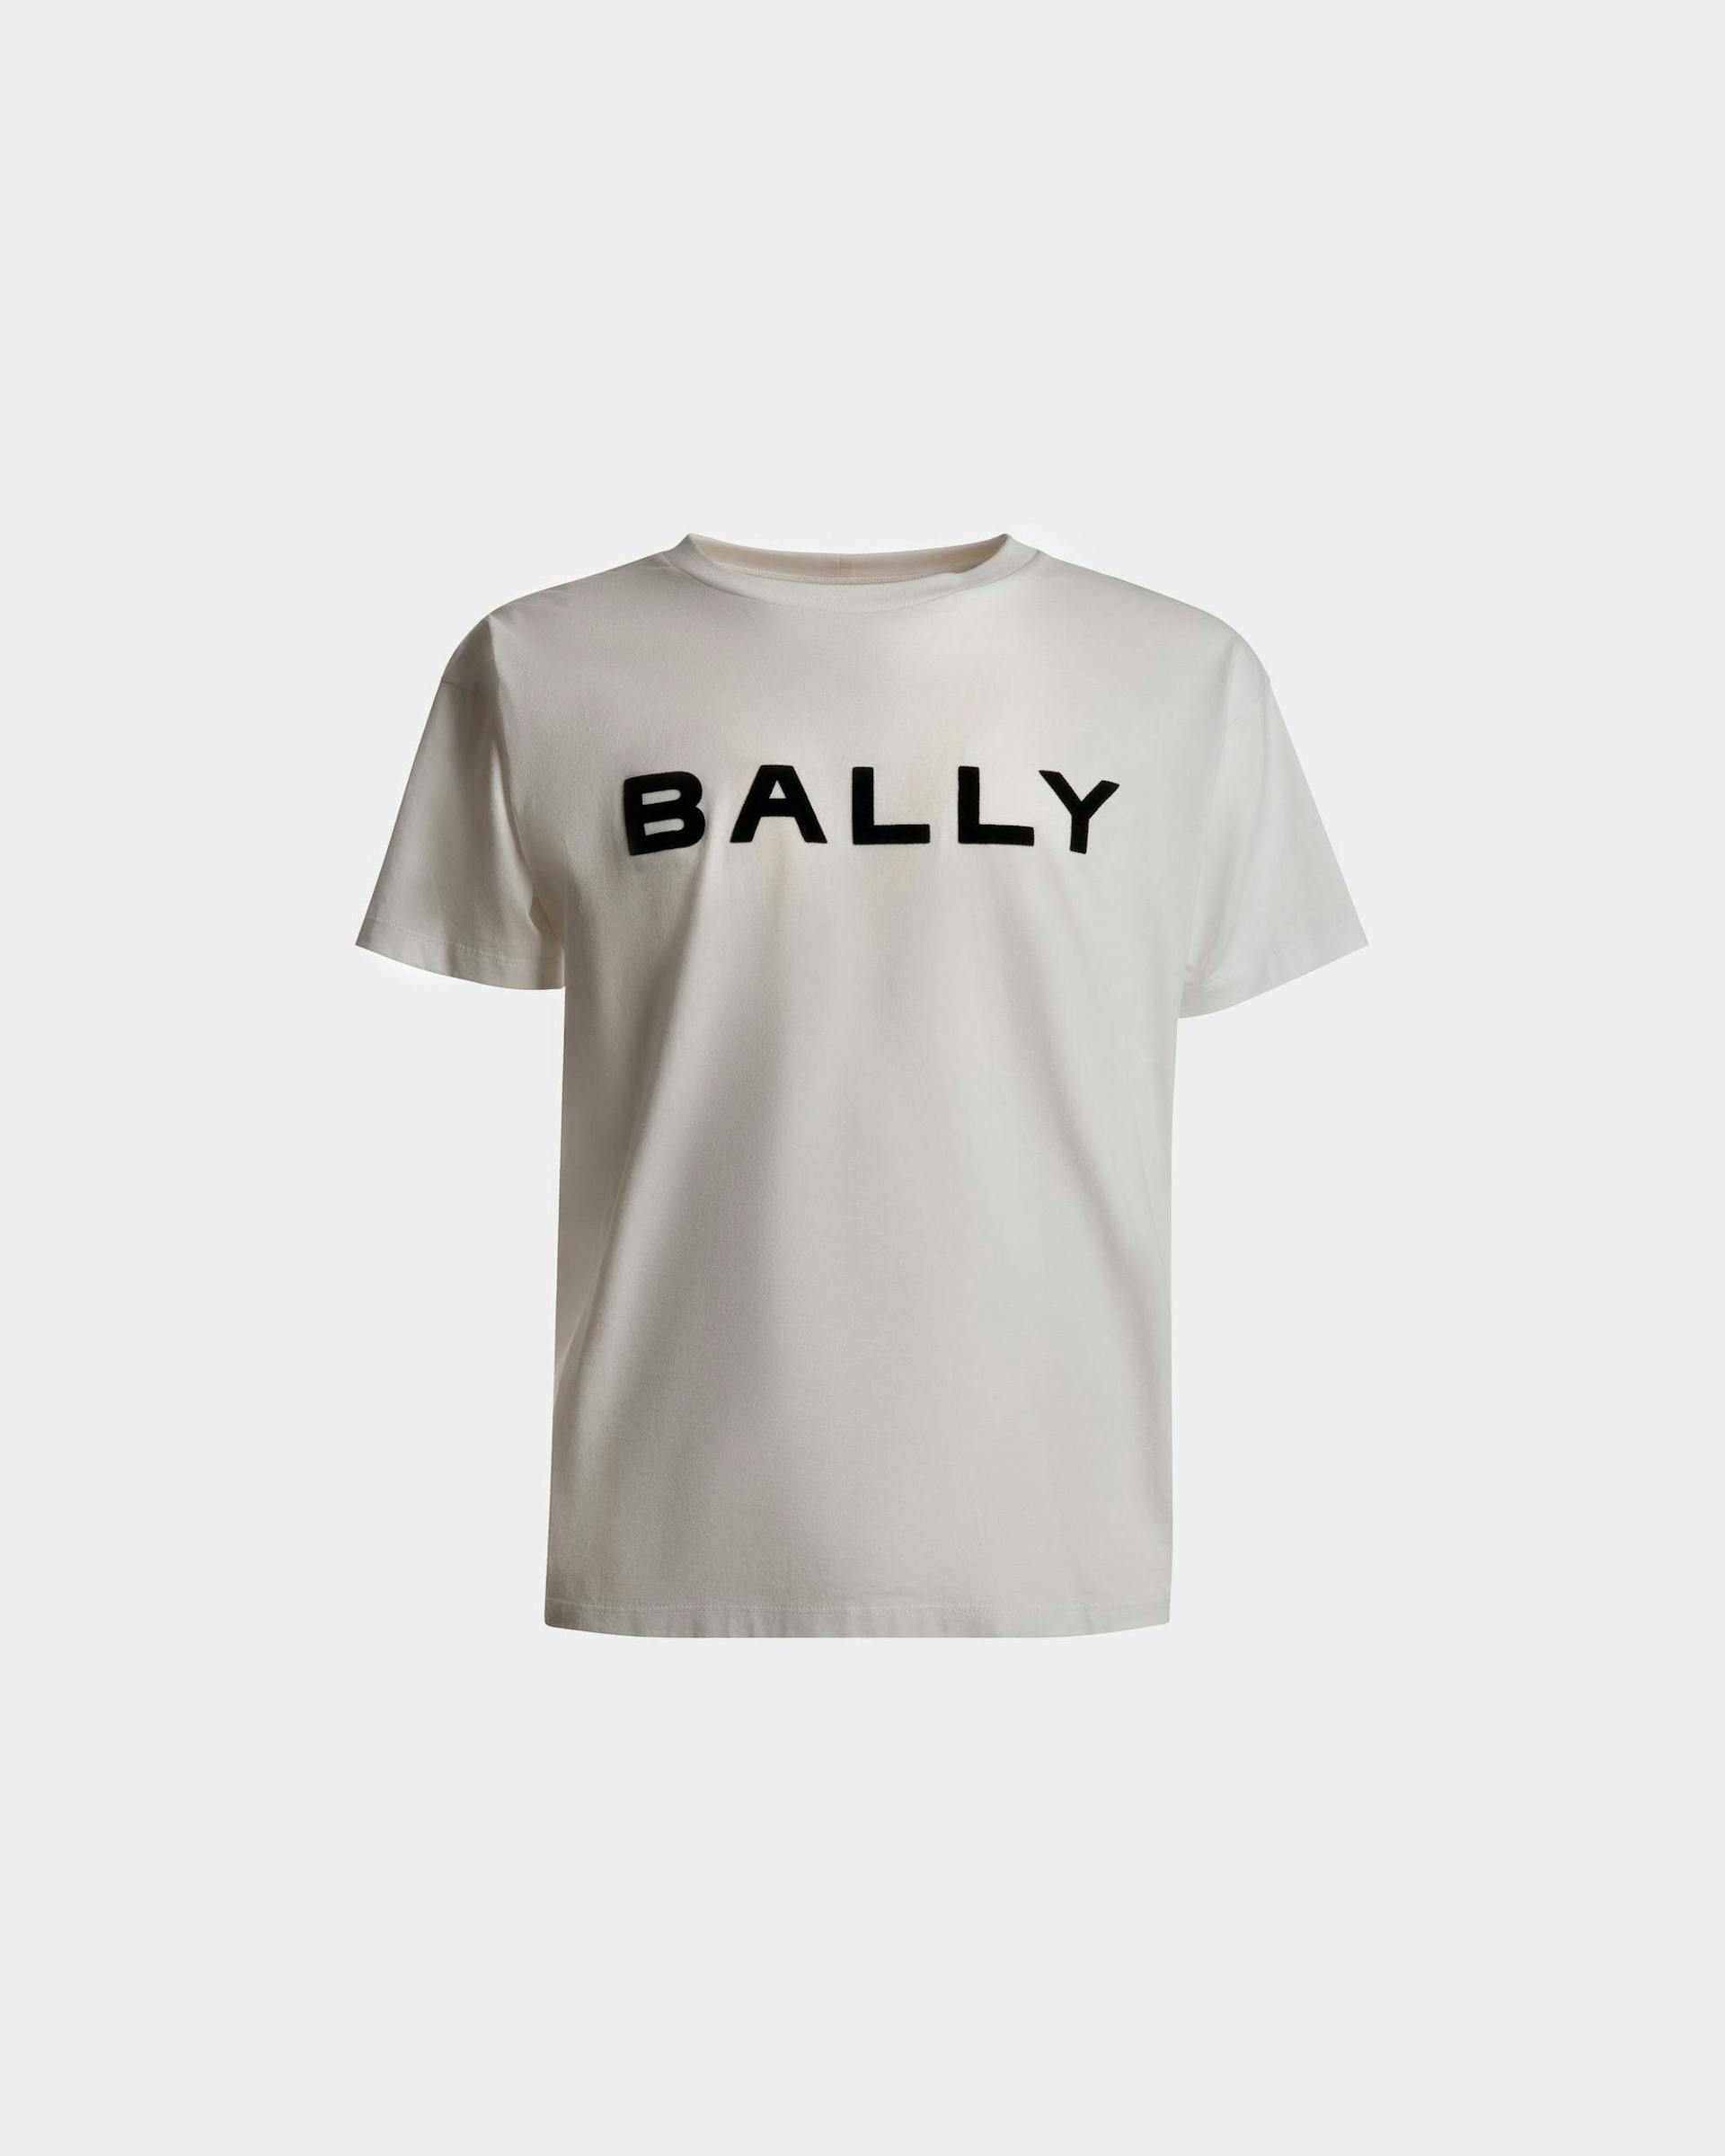 T-Shirt Mit Logo Aus Weißer Baumwolle - Herren - Bally - 01